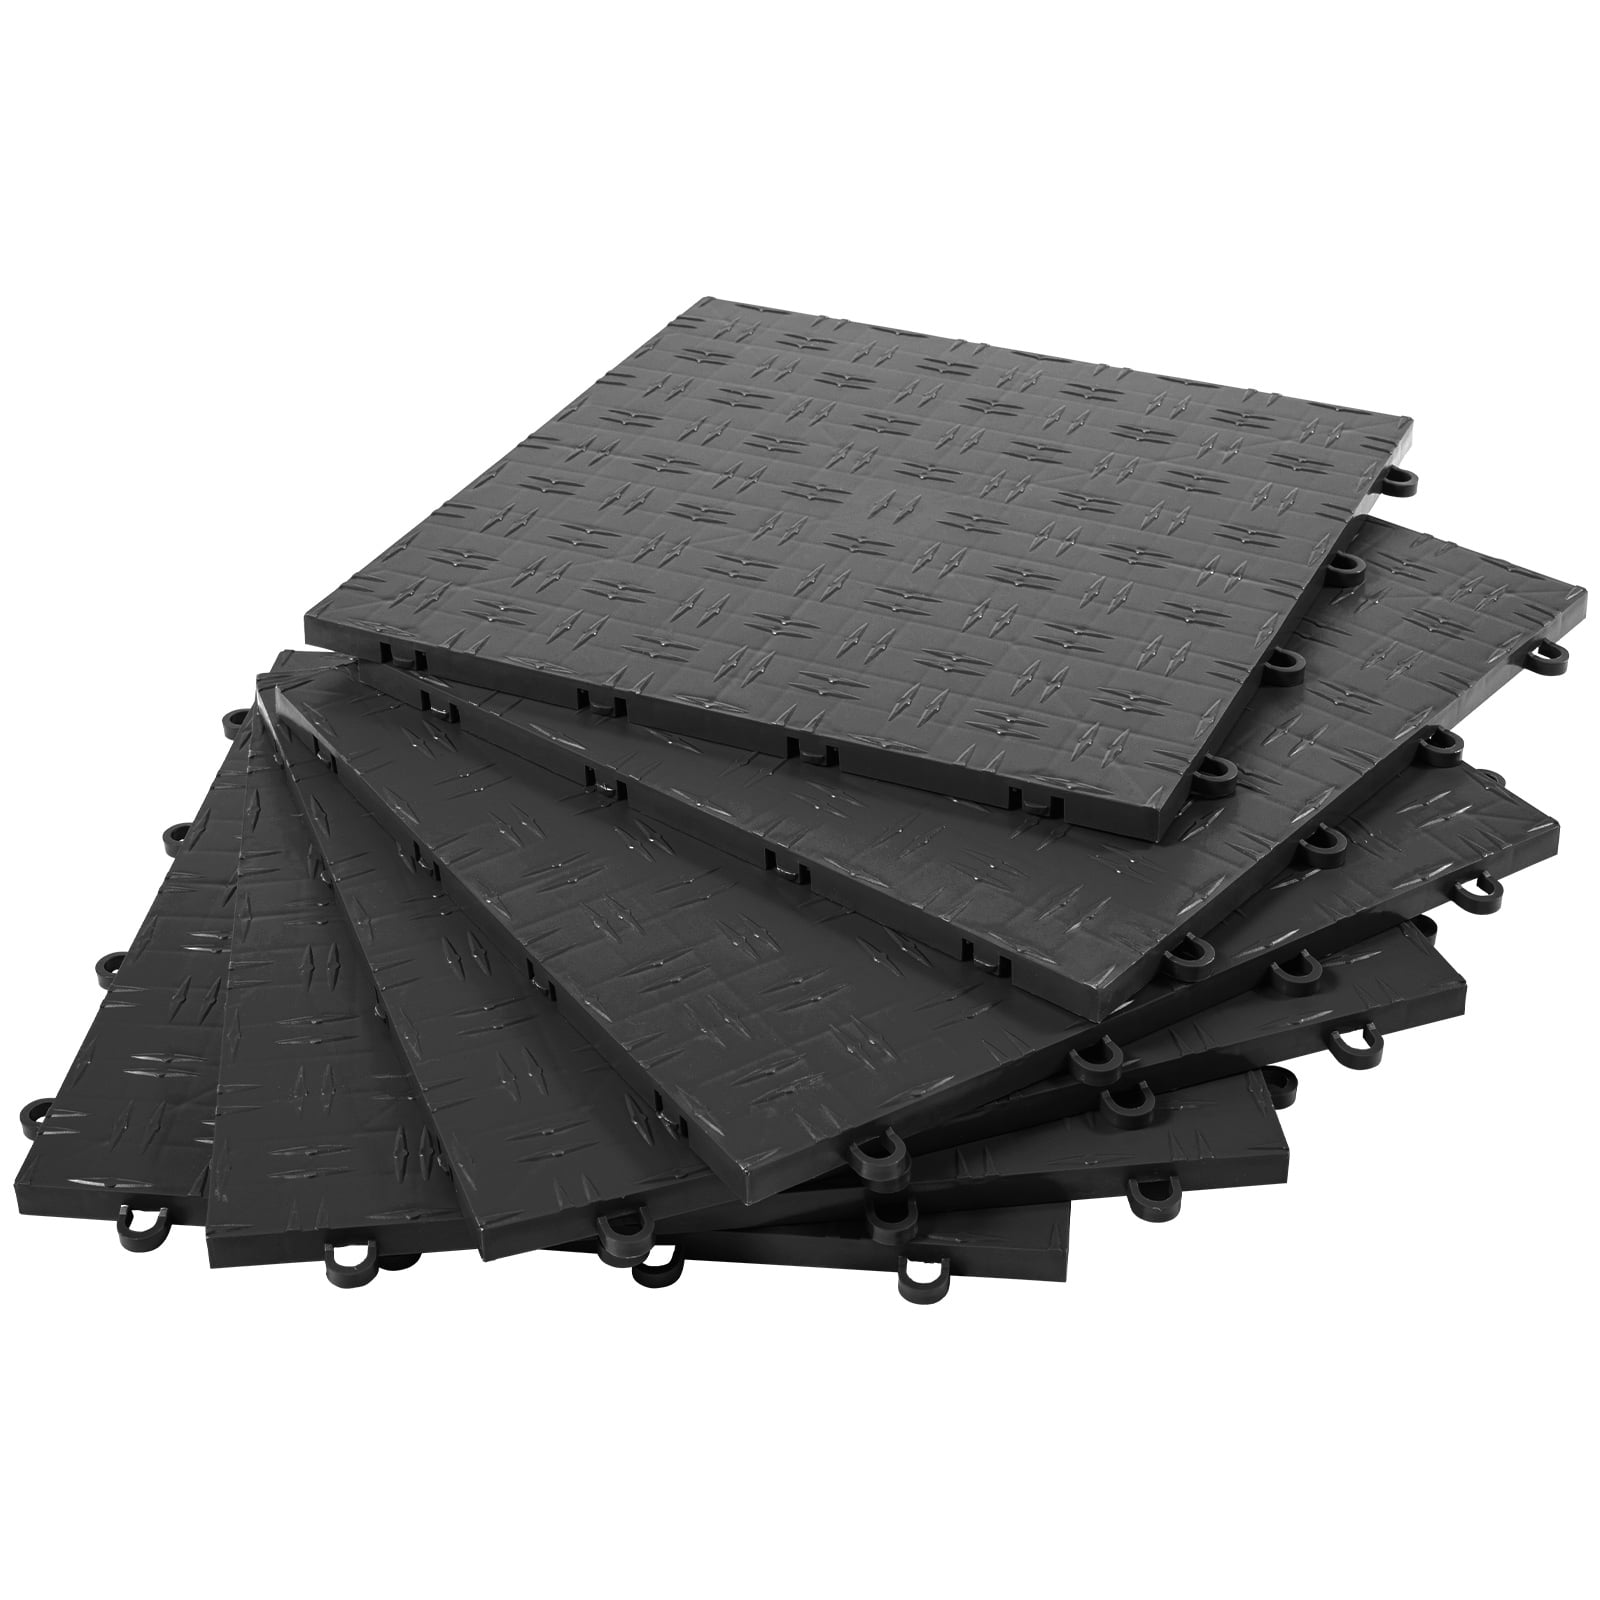 Diamond Top Garage Floor Tiles - 12 x 12 in